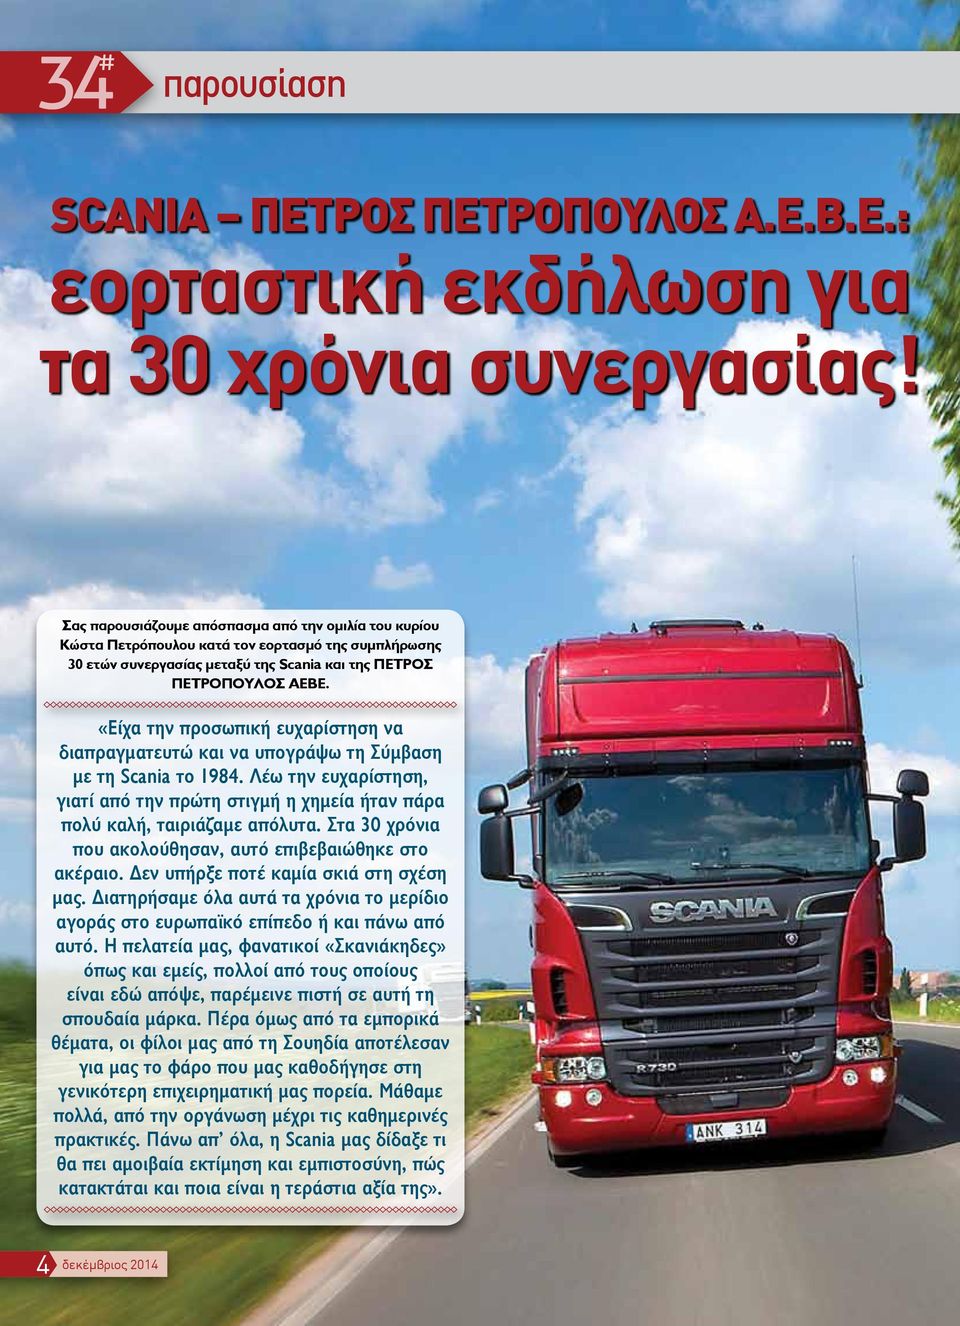 «Είχα την προσωπική ευχαρίστηση να διαπραγματευτώ και να υπογράψω τη Σύμβαση με τη Scania το 1984. Λέω την ευχαρίστηση, γιατί από την πρώτη στιγμή η χημεία ήταν πάρα πολύ καλή, ταιριάζαμε απόλυτα.